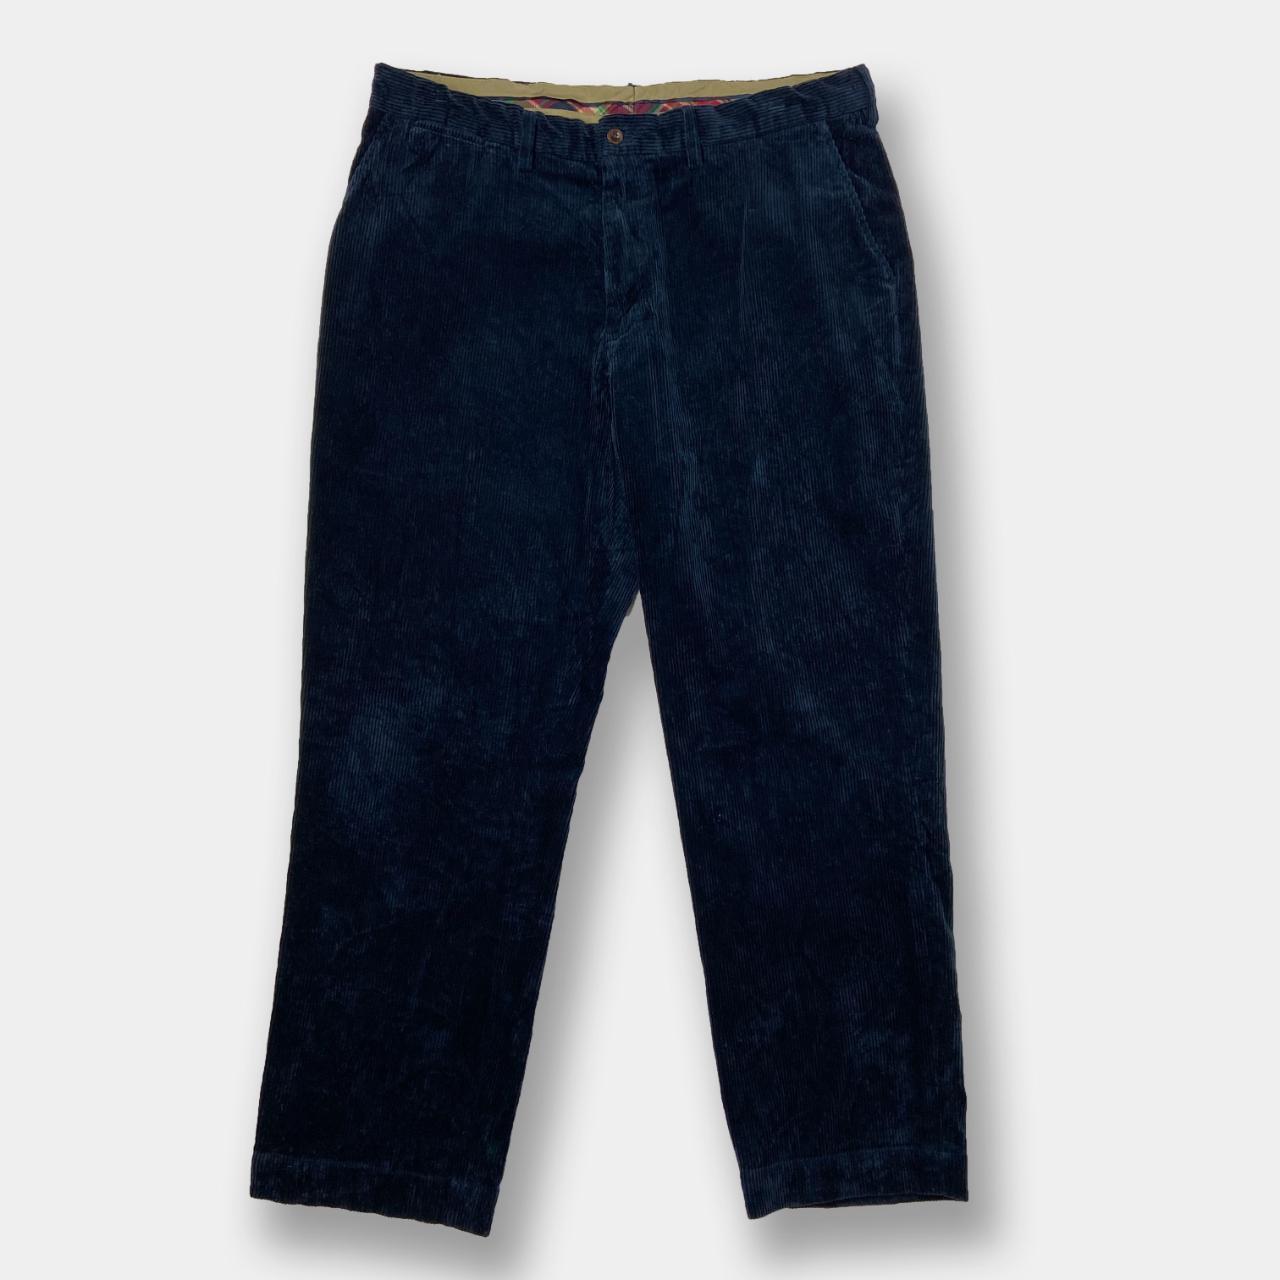 Vintage Navy Ralph Lauren Jumbo Cord Trousers... - Depop